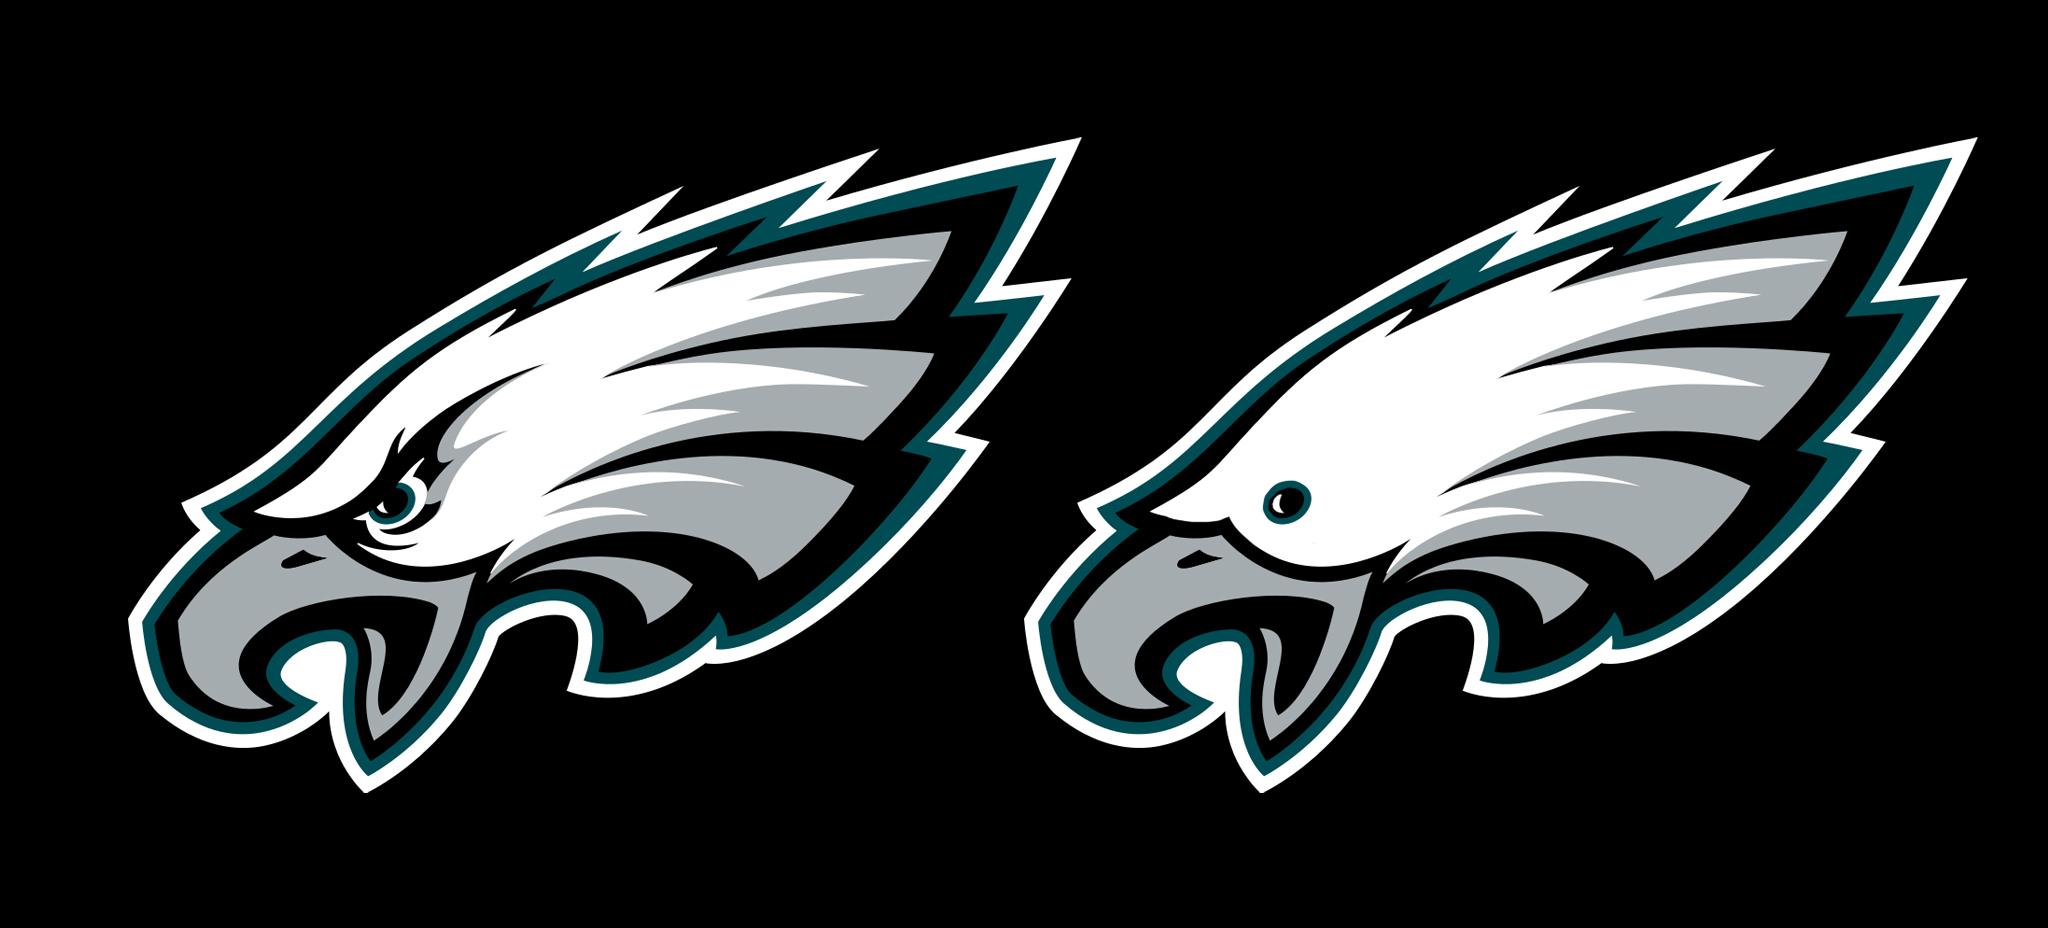 Eagles Logo - The Philadelphia Eagles logo without eyebrows